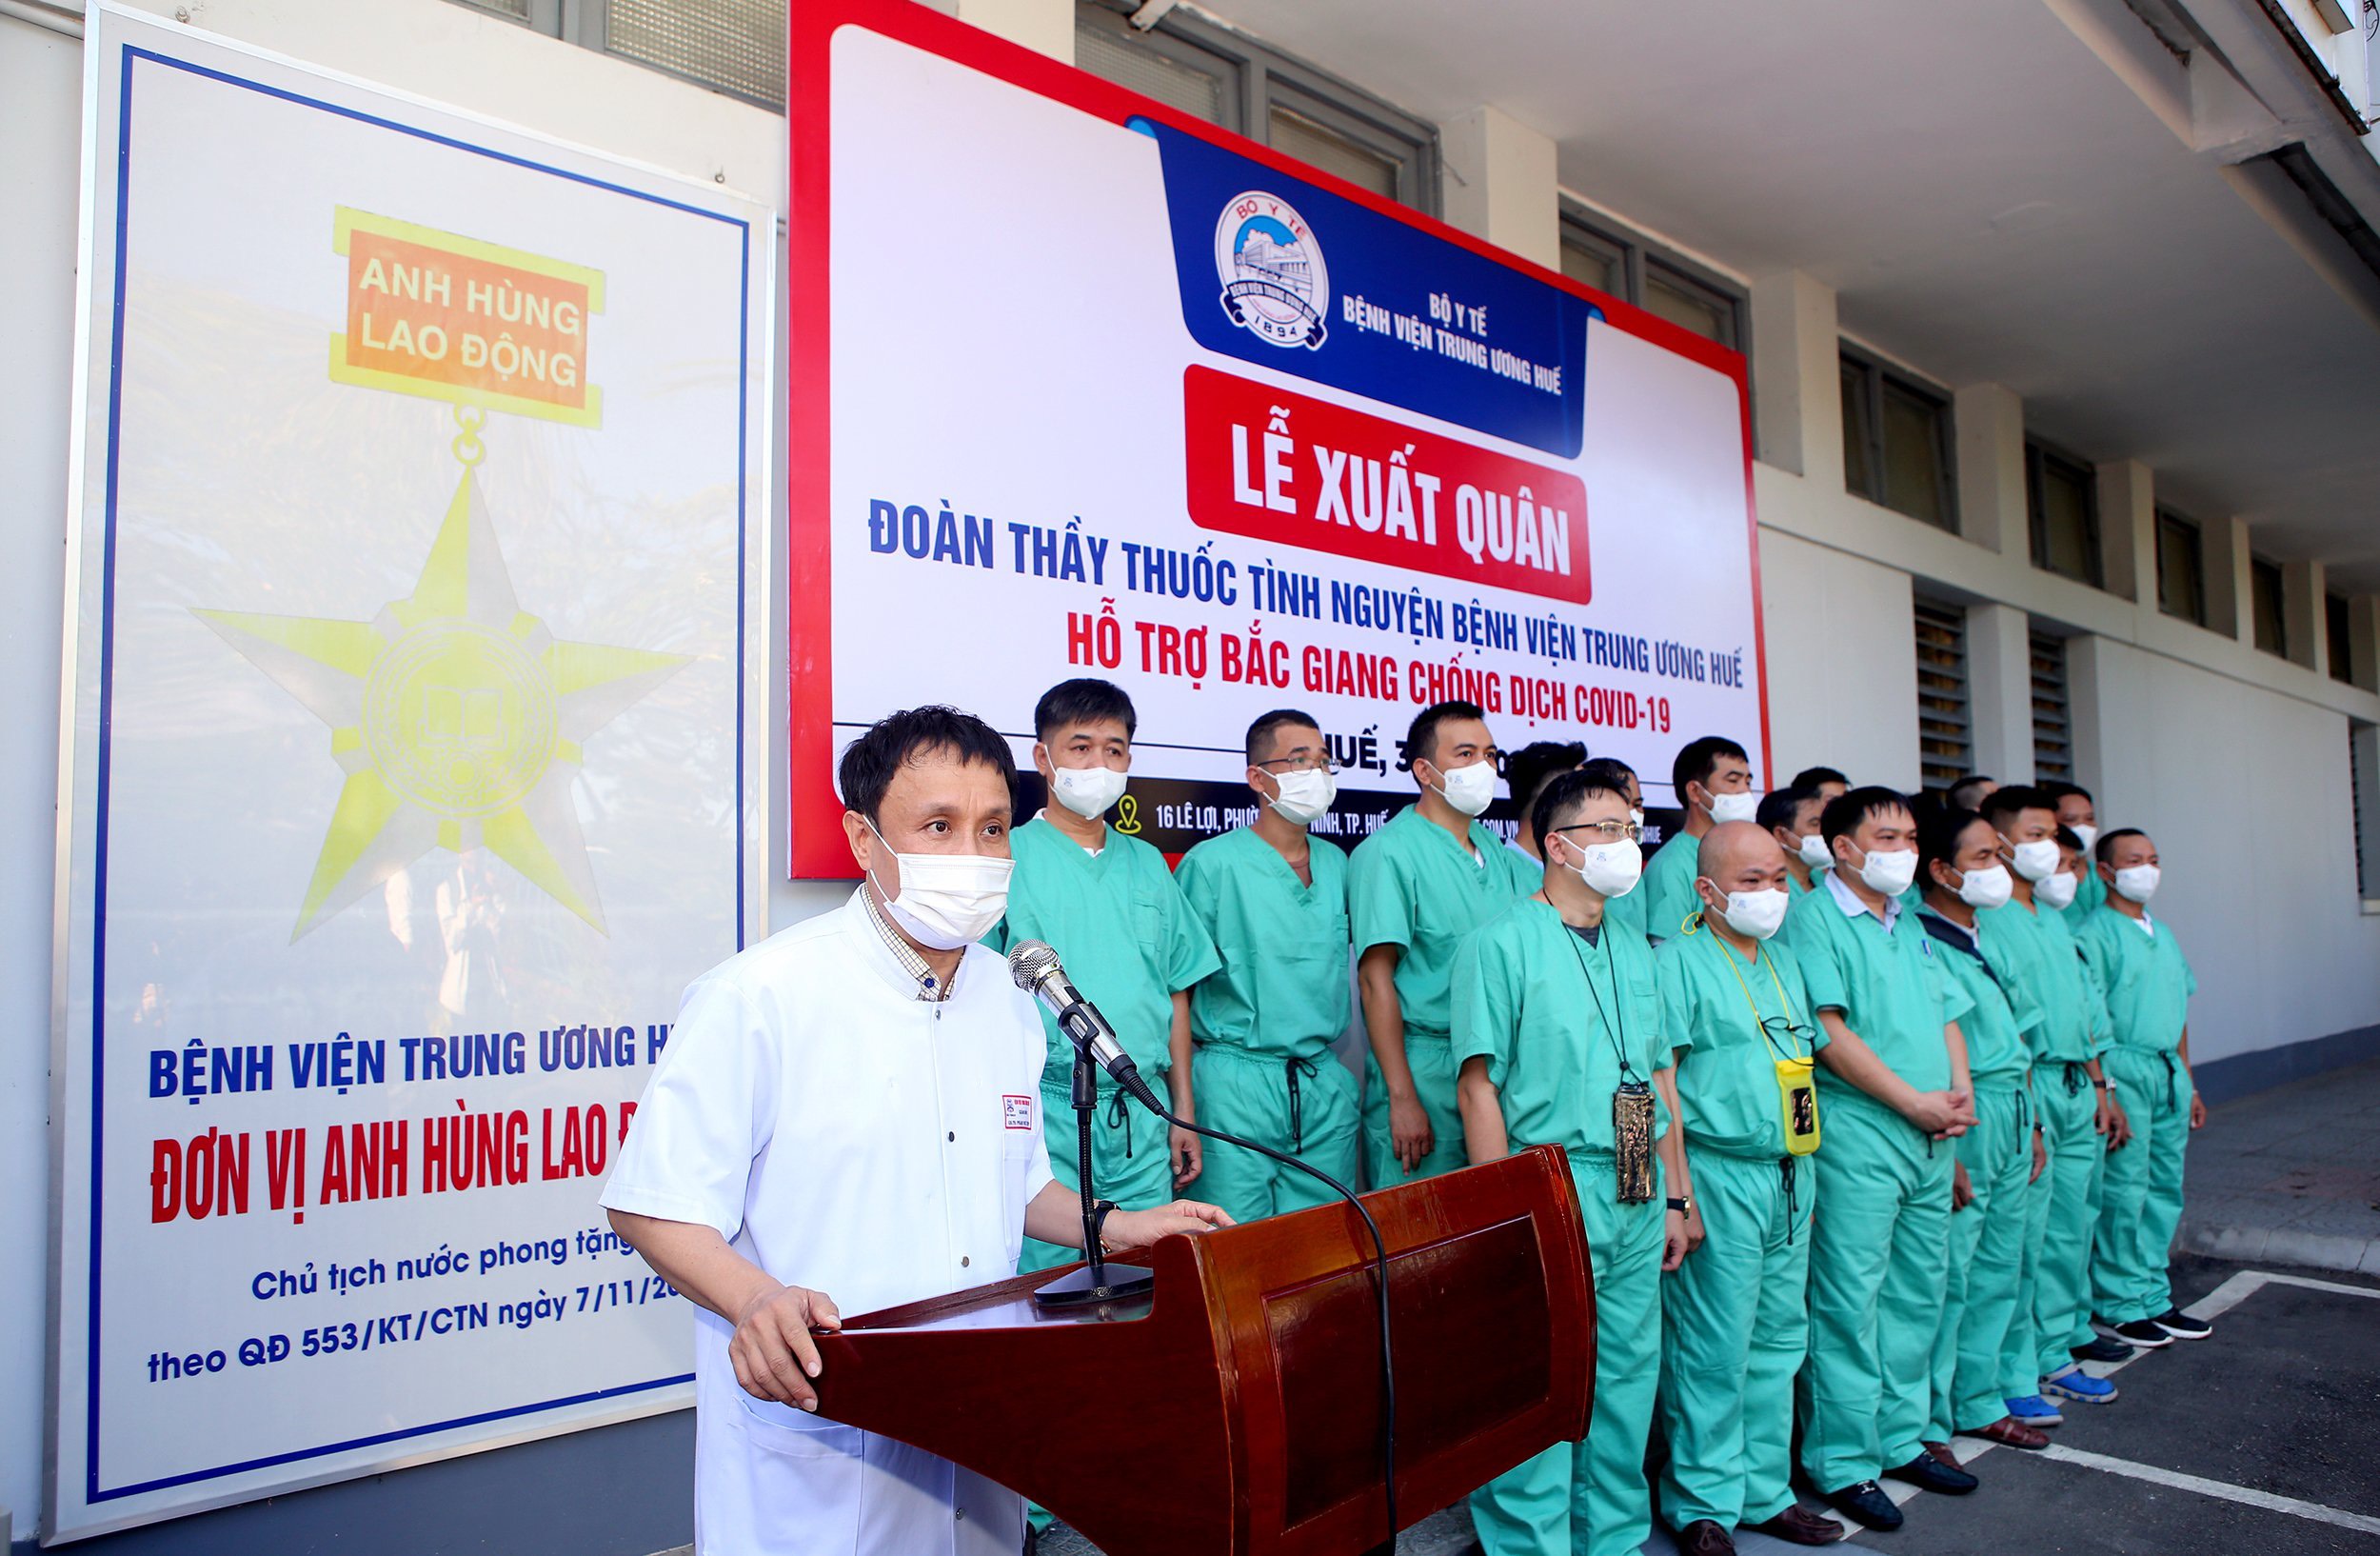 Đoàn thầy thuốc tình nguyện của Bệnh viện Trung ương Huế lên đường đến hỗ trợ tỉnh Bắc Giang chống dịch COVID-19.